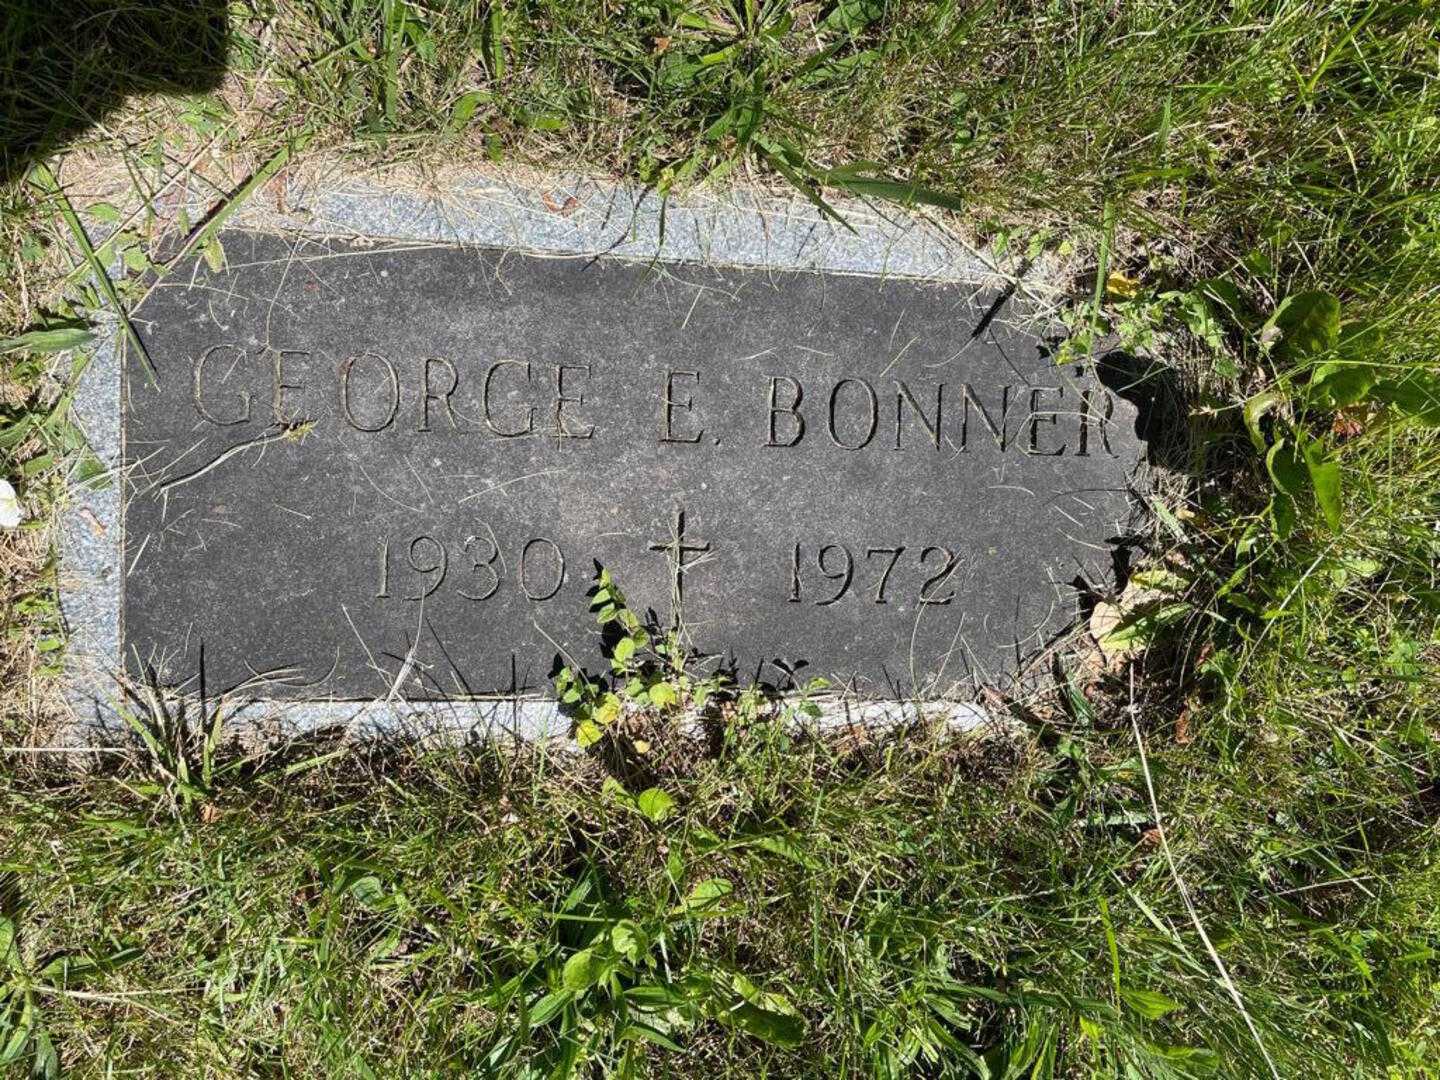 George E. Bonner's grave. Photo 3